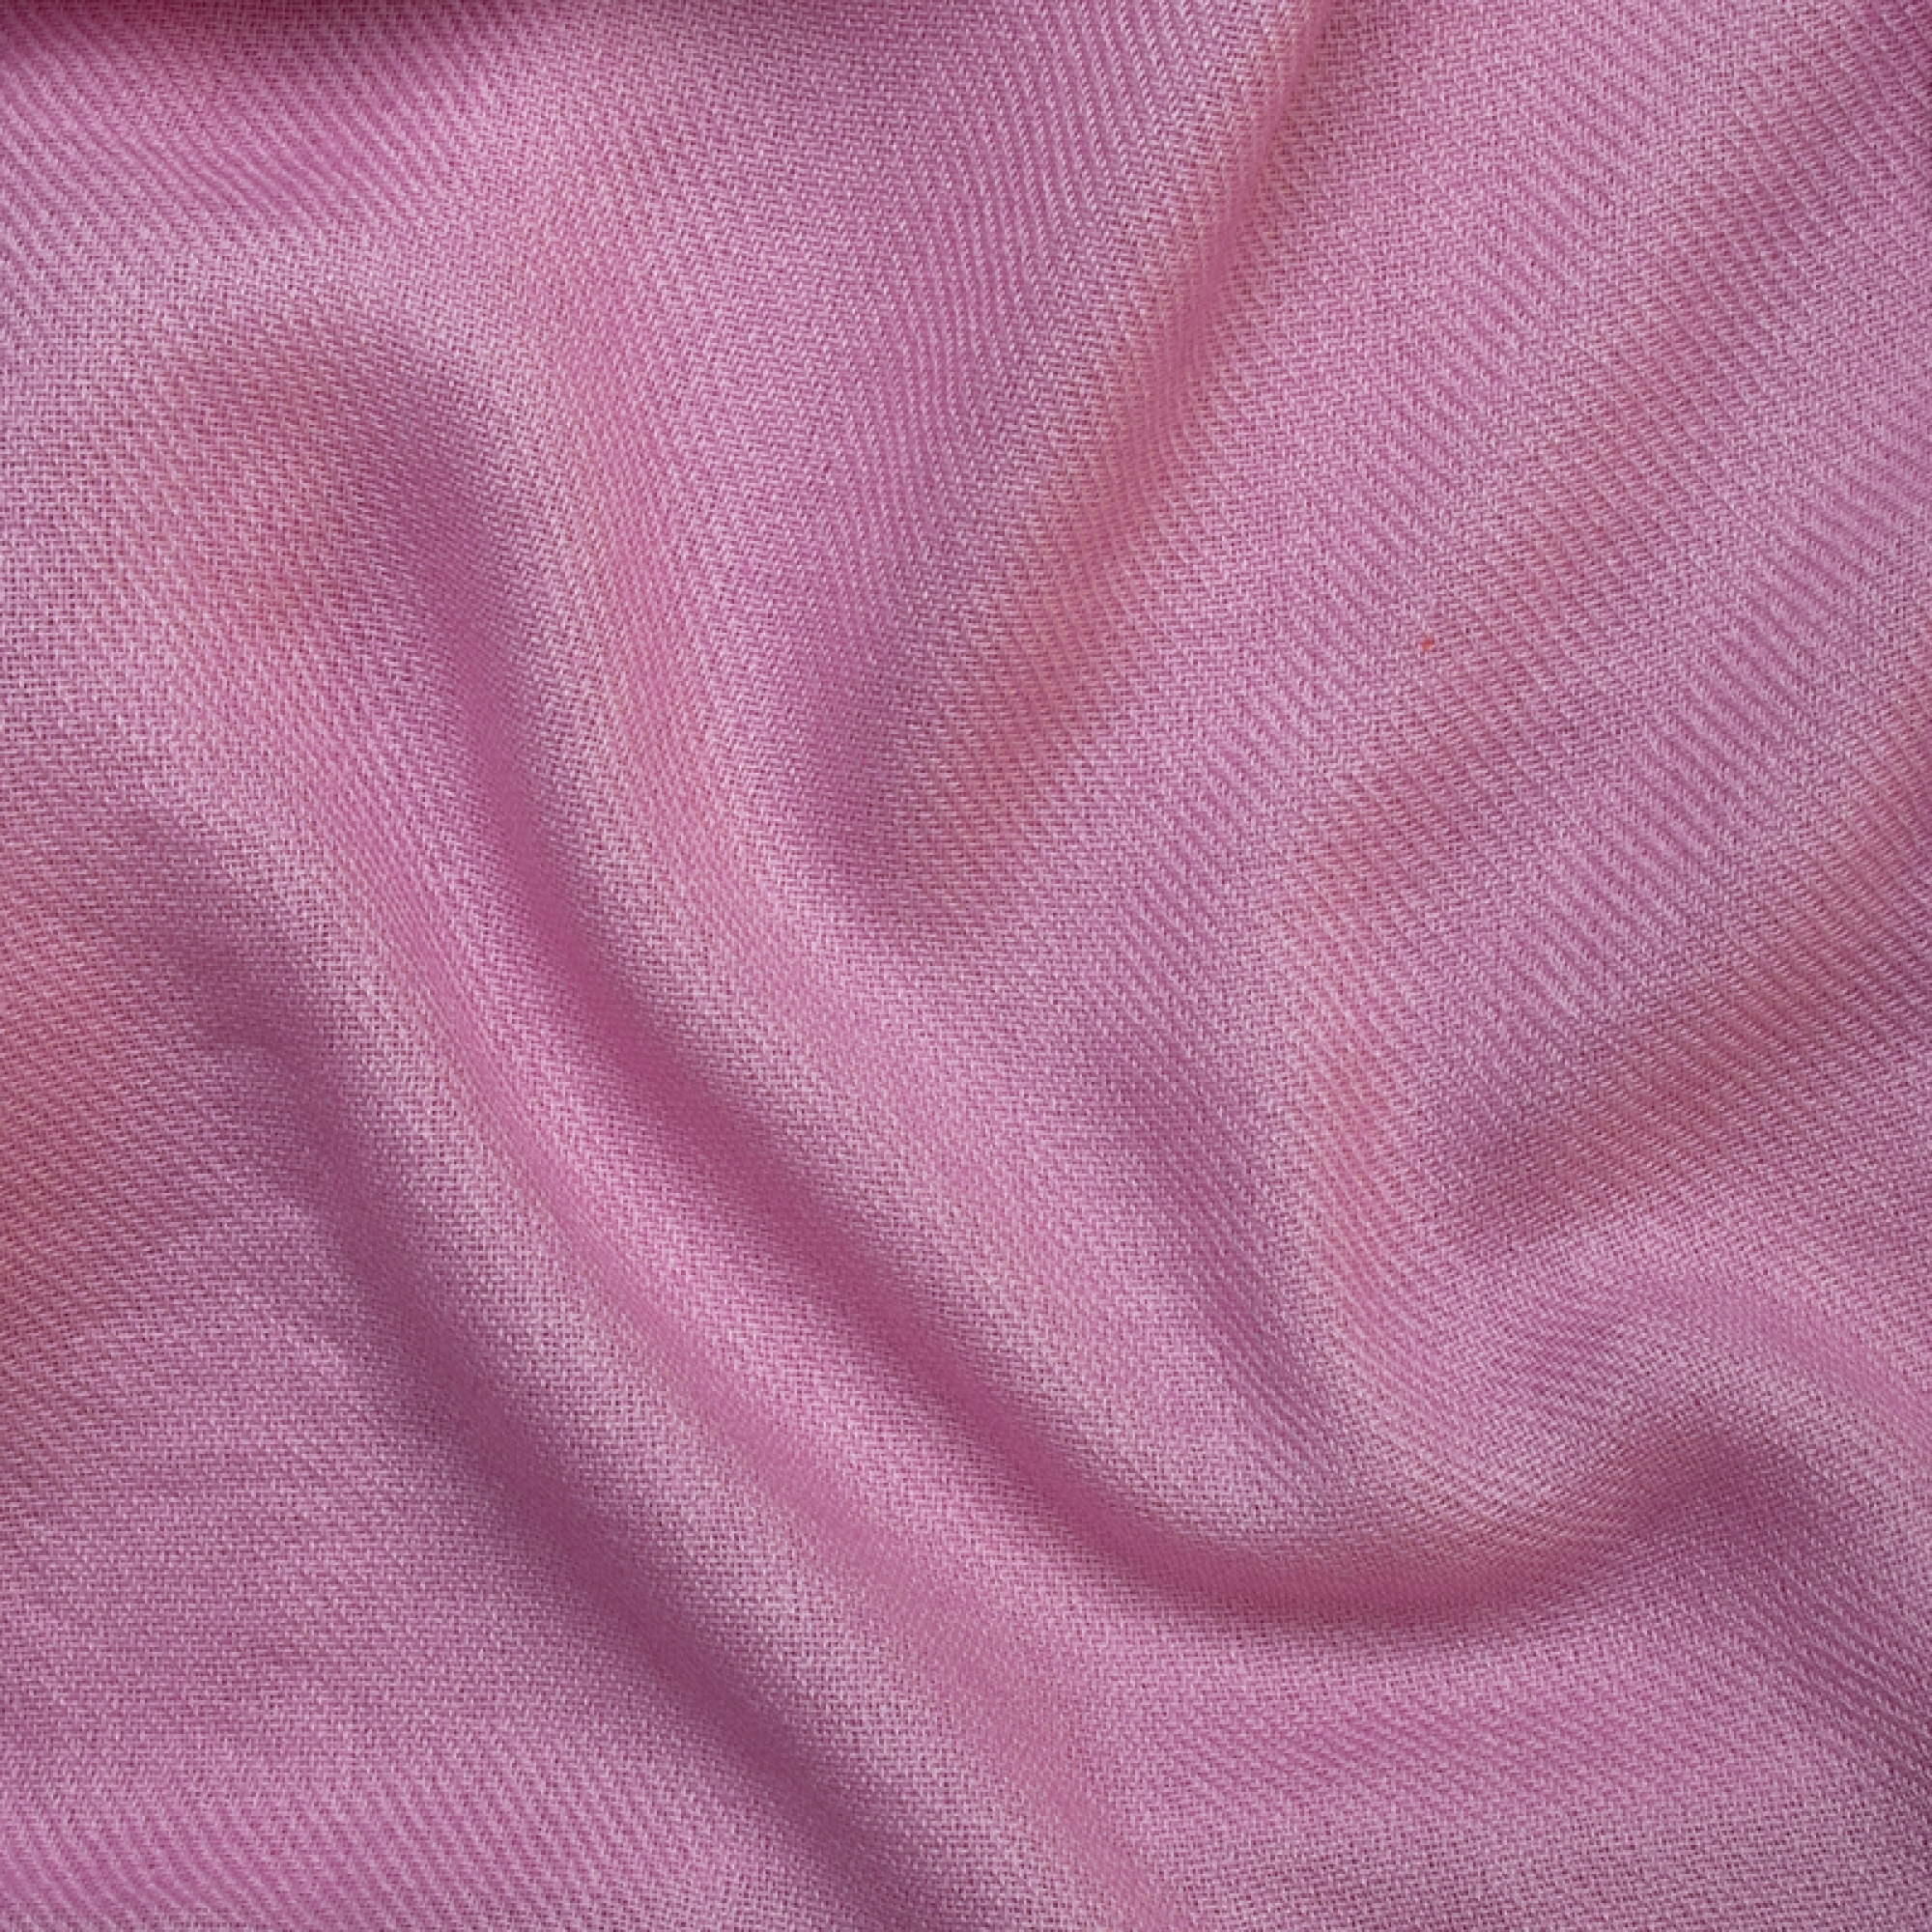 Cashmere men toodoo plain s 140 x 200 pink lavender 140 x 200 cm